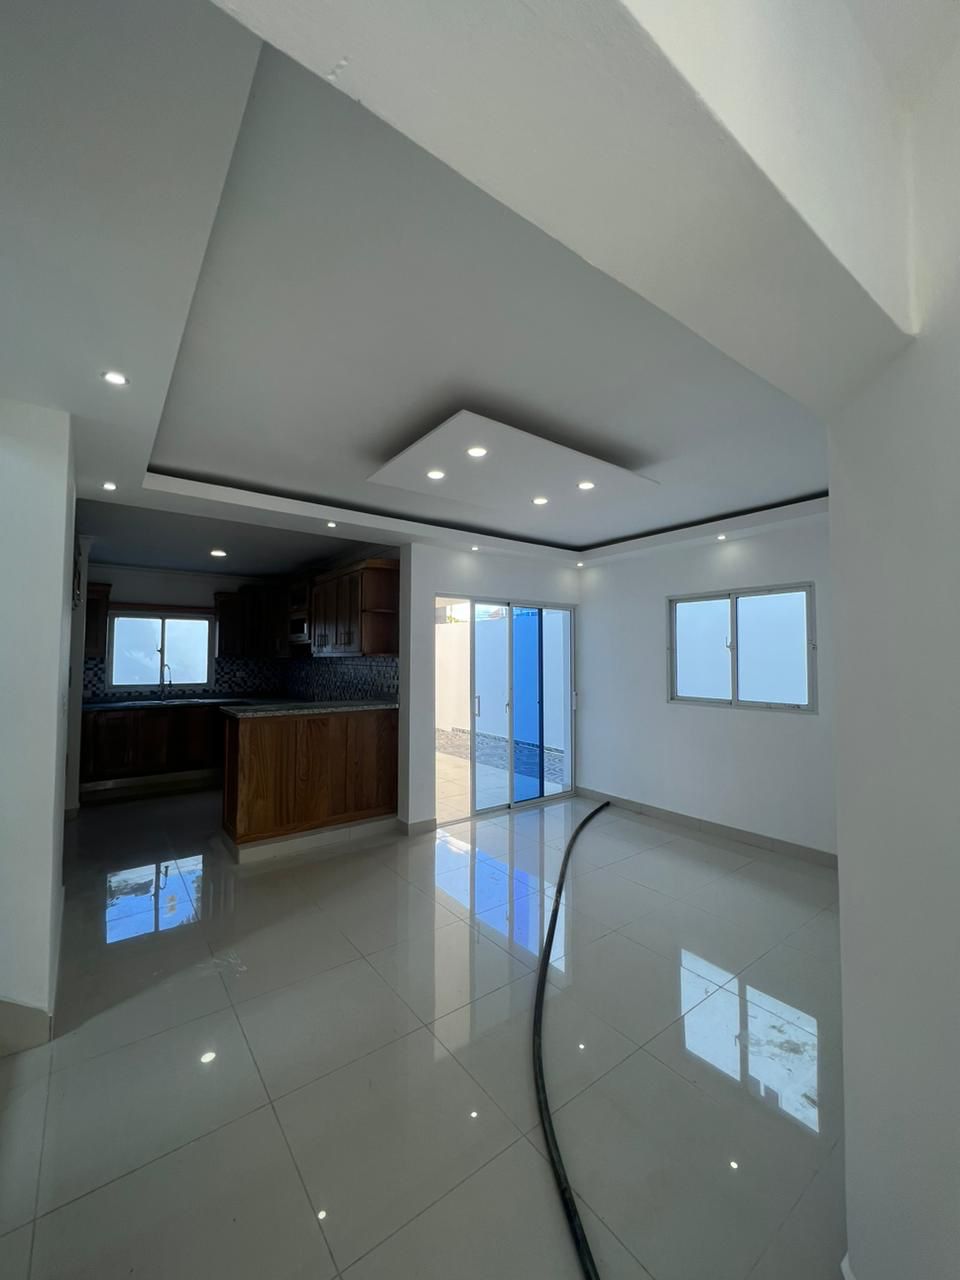 Vendo Moderna y Amplia Casa Duplex en San Isidro  Foto 7192227-r1.jpg